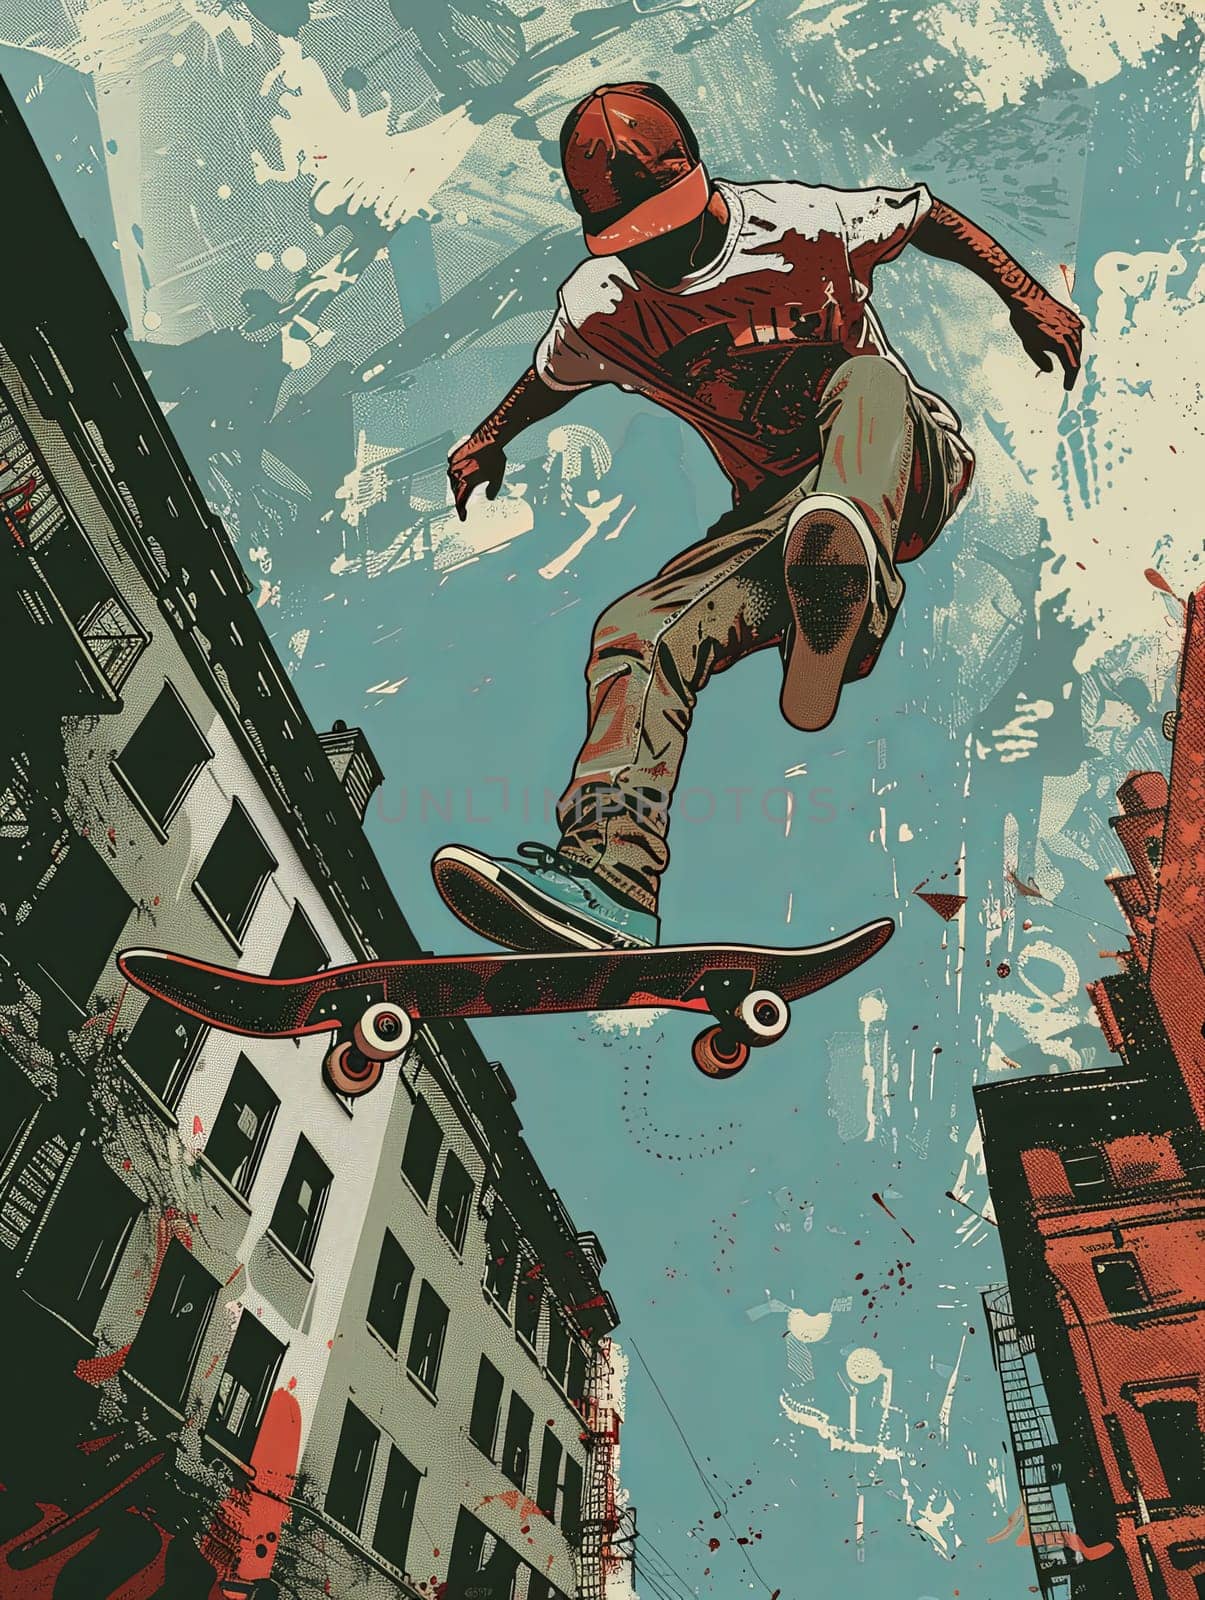 A man propels through the air while riding a skateboard in a dynamic urban setting.